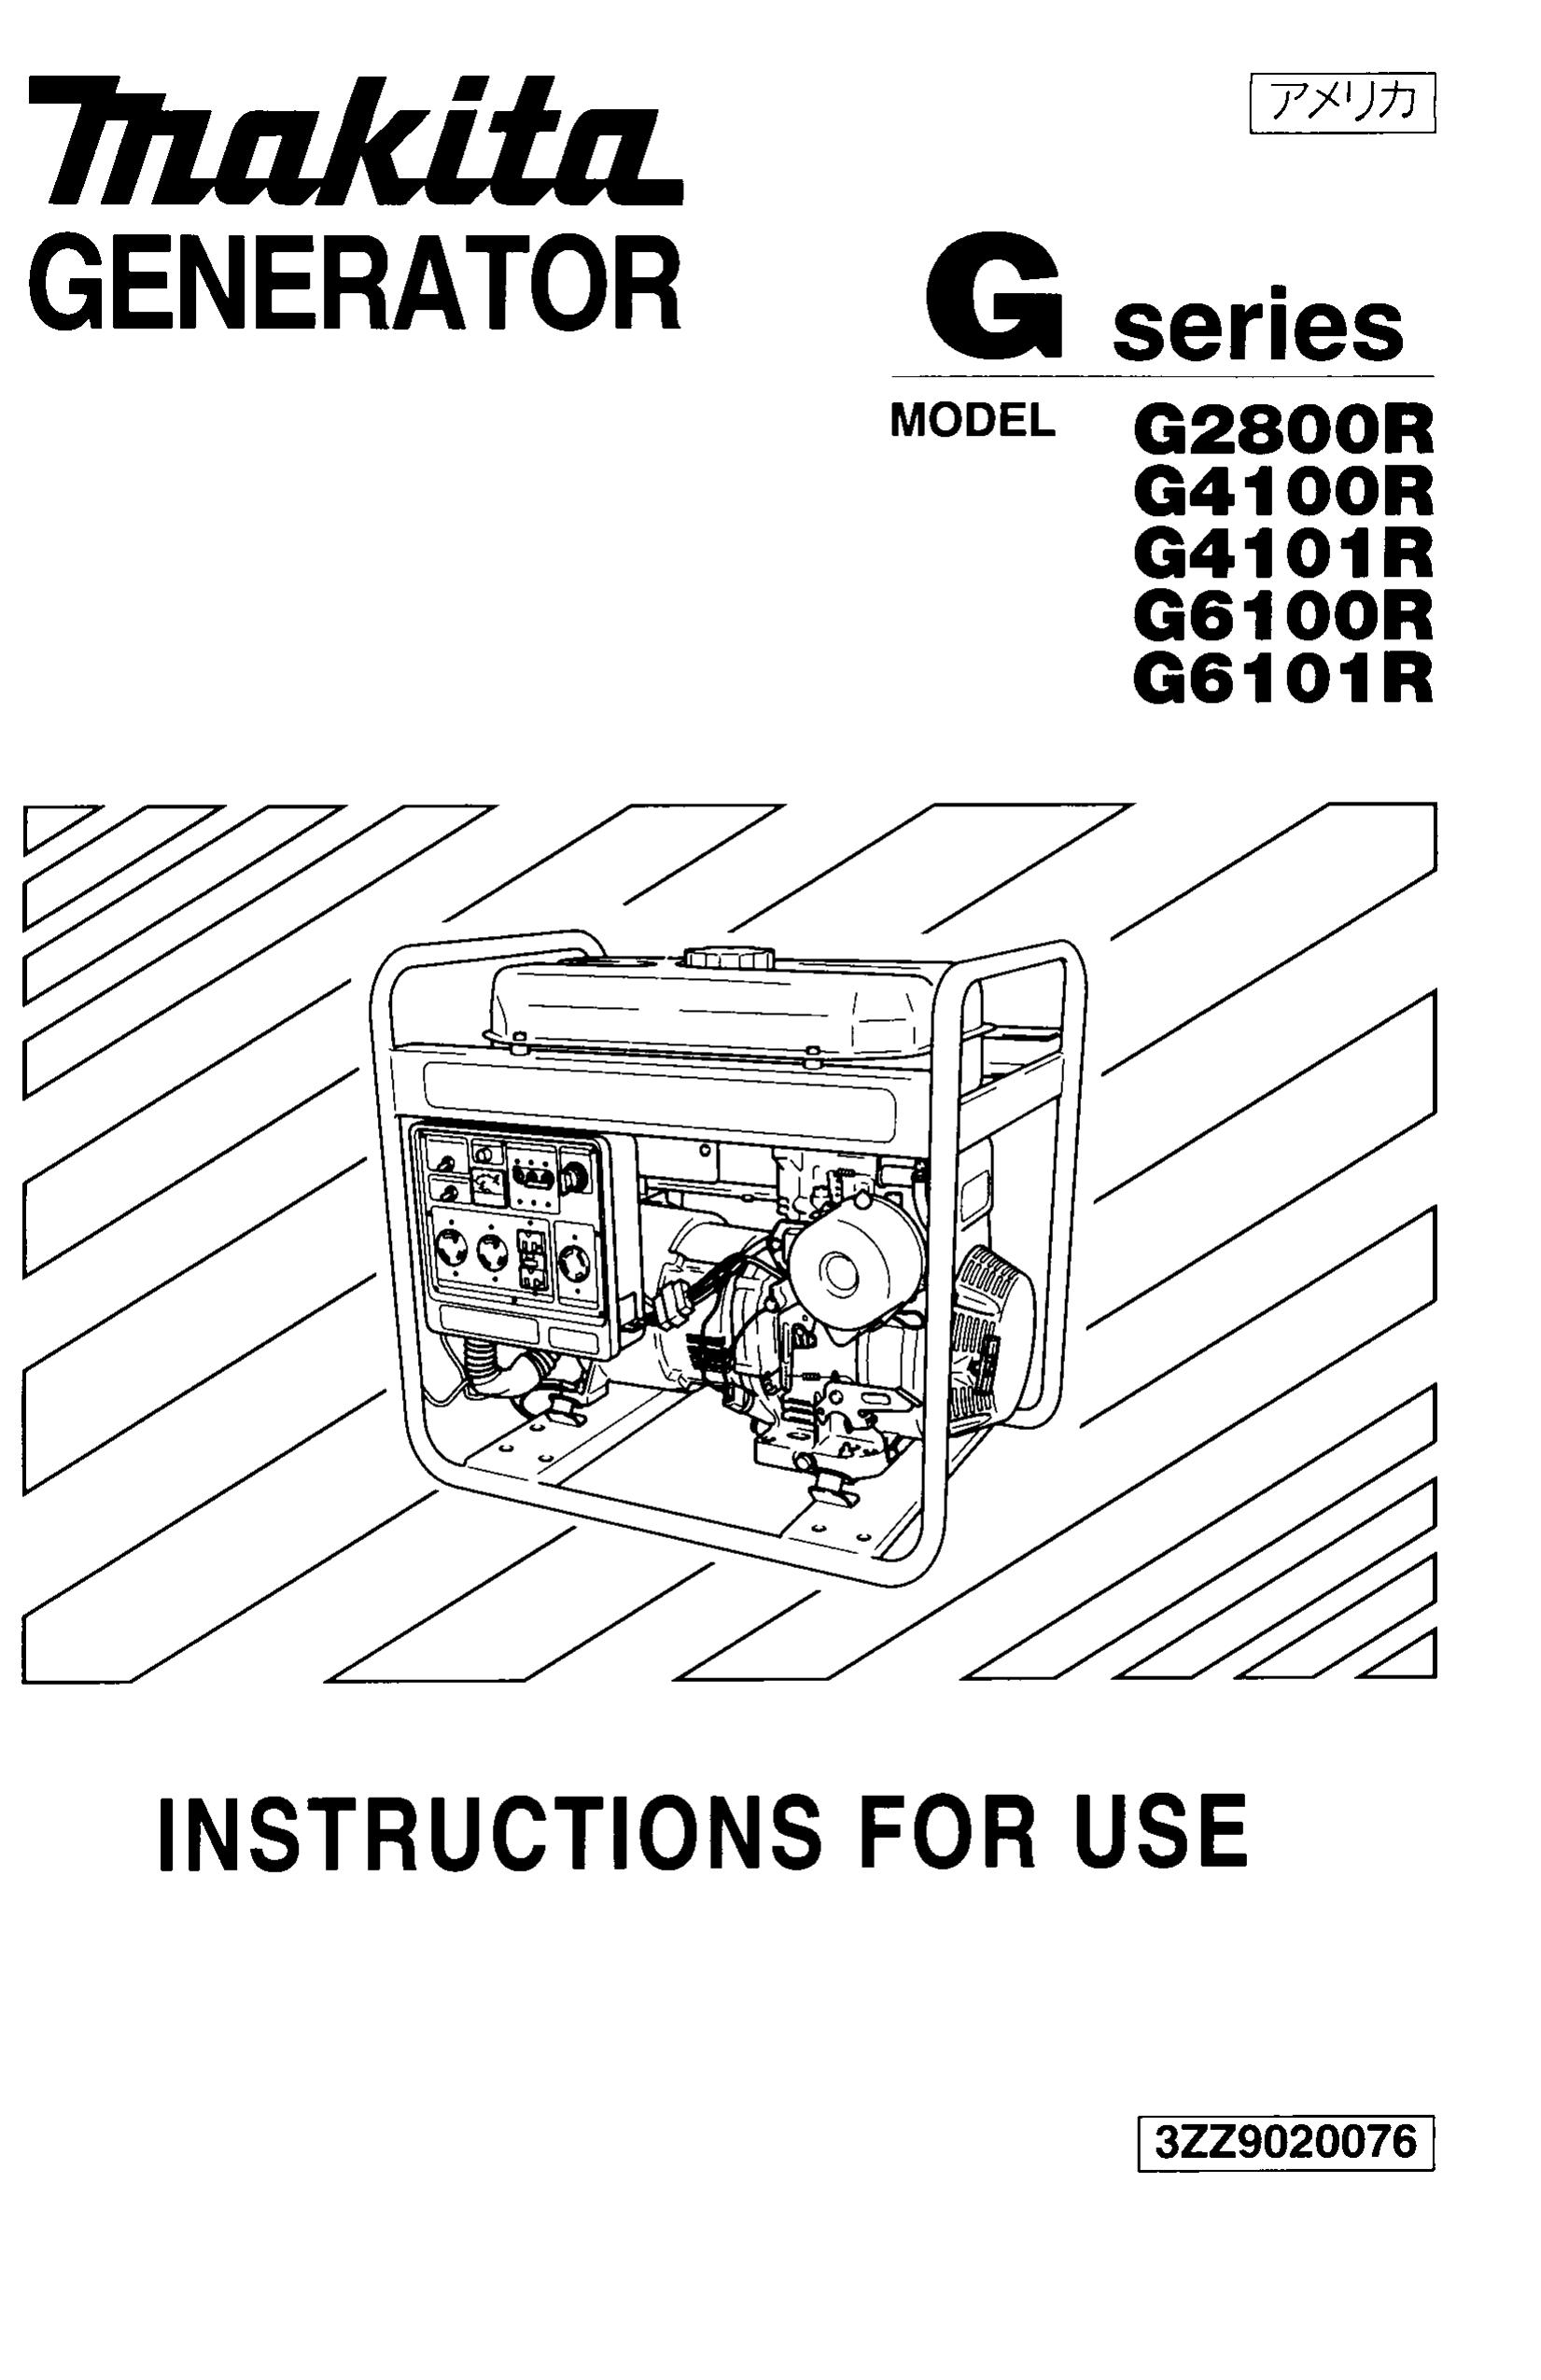 Makita G4101R Portable Generator User Manual